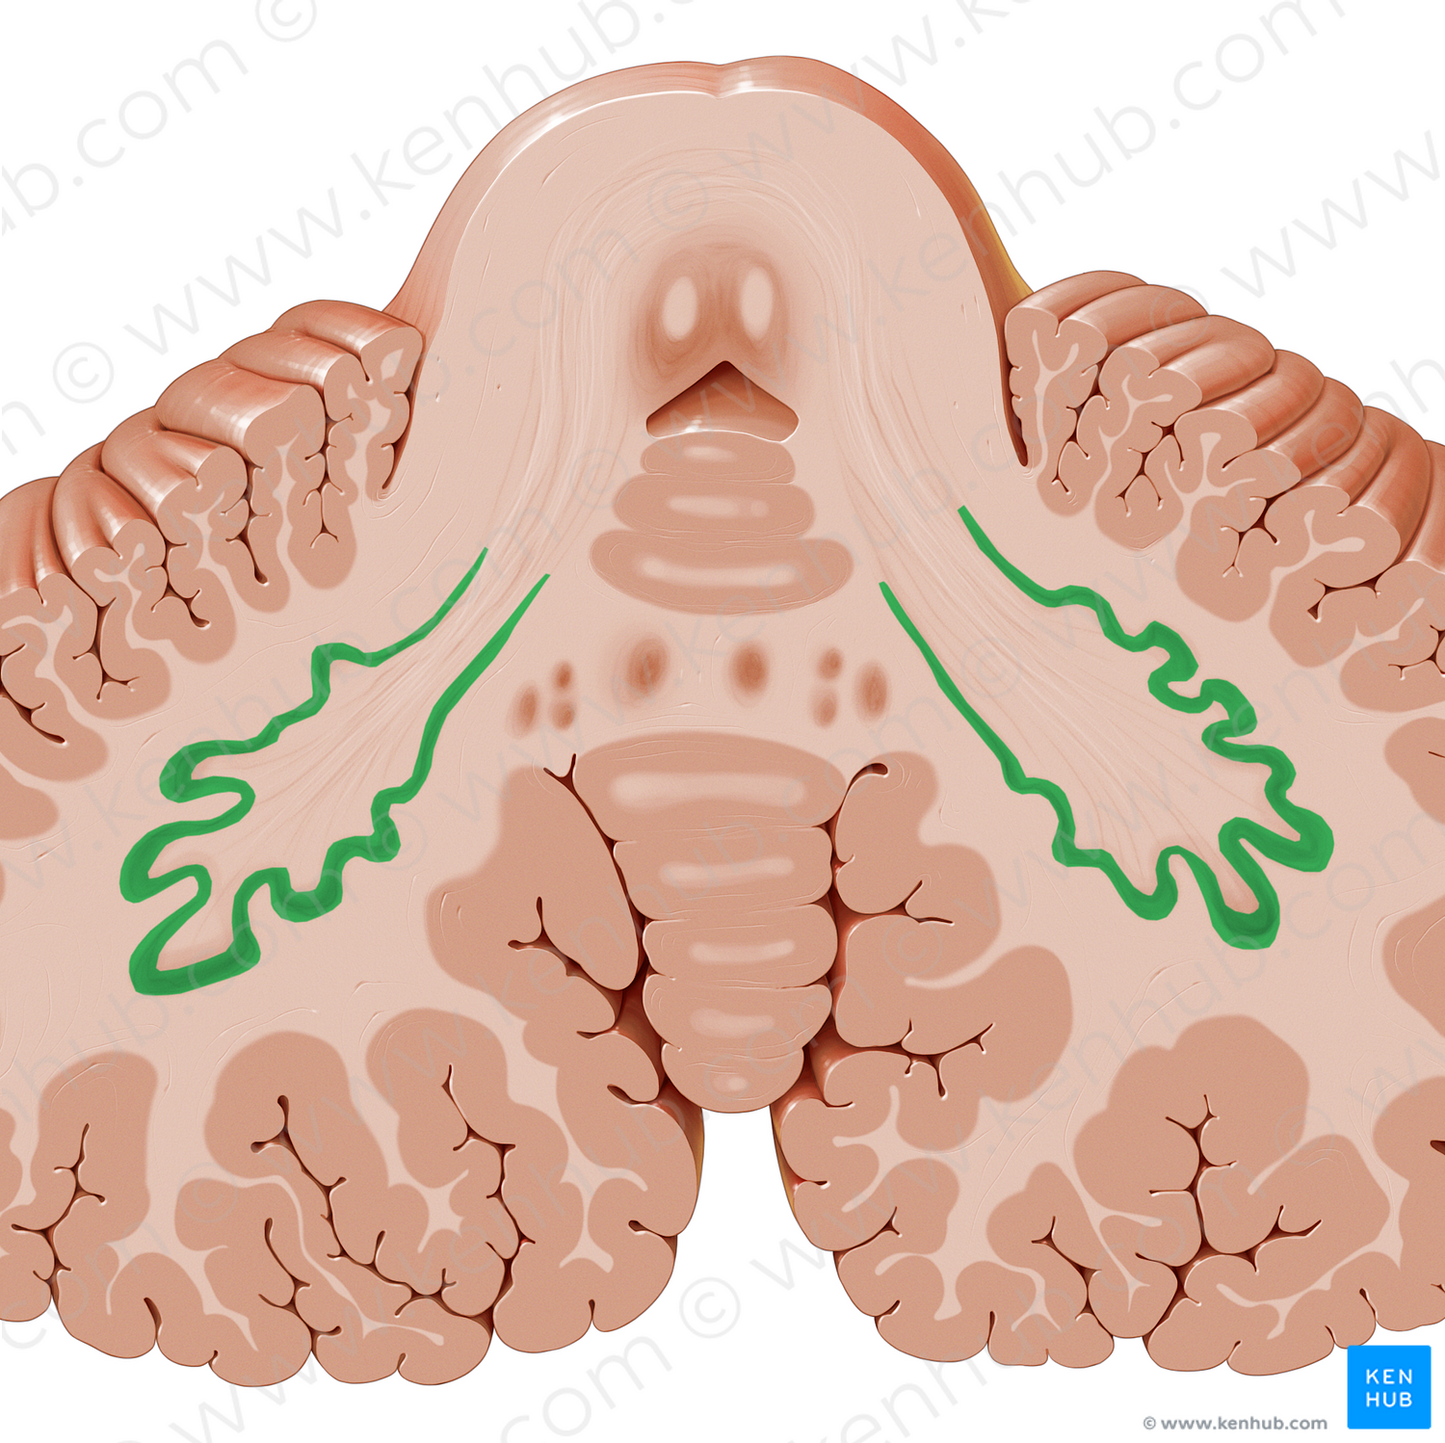 Dentate nucleus (#7186)